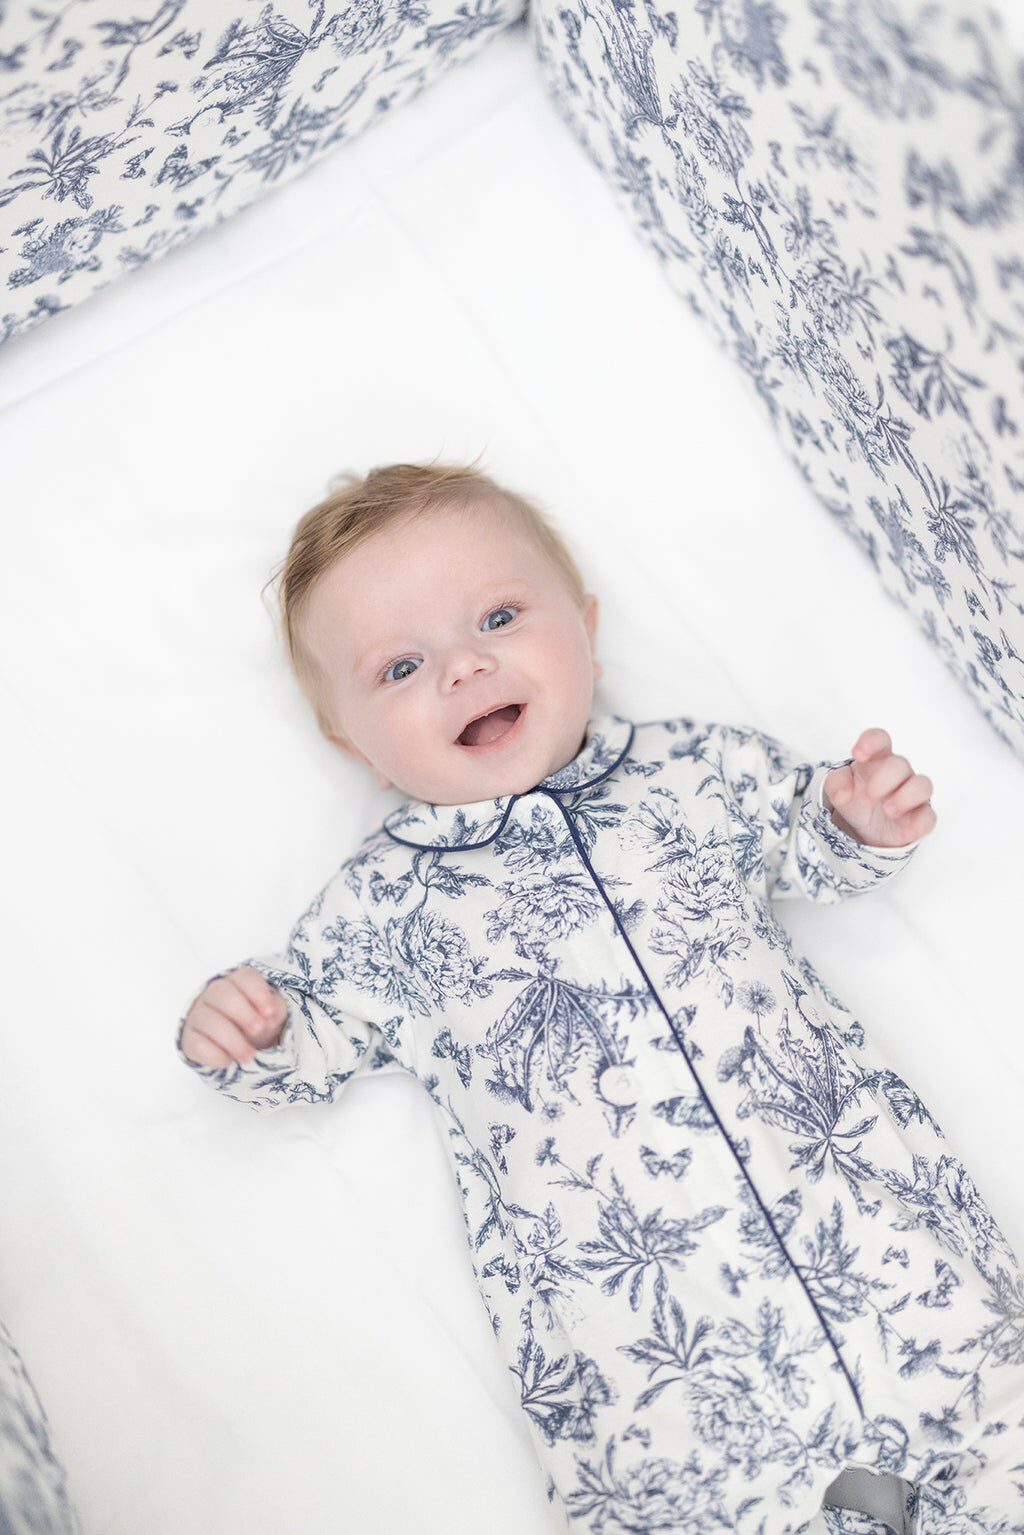 Lot de 2 pyjamas à pieds bébé fille violet glace 9 mois 